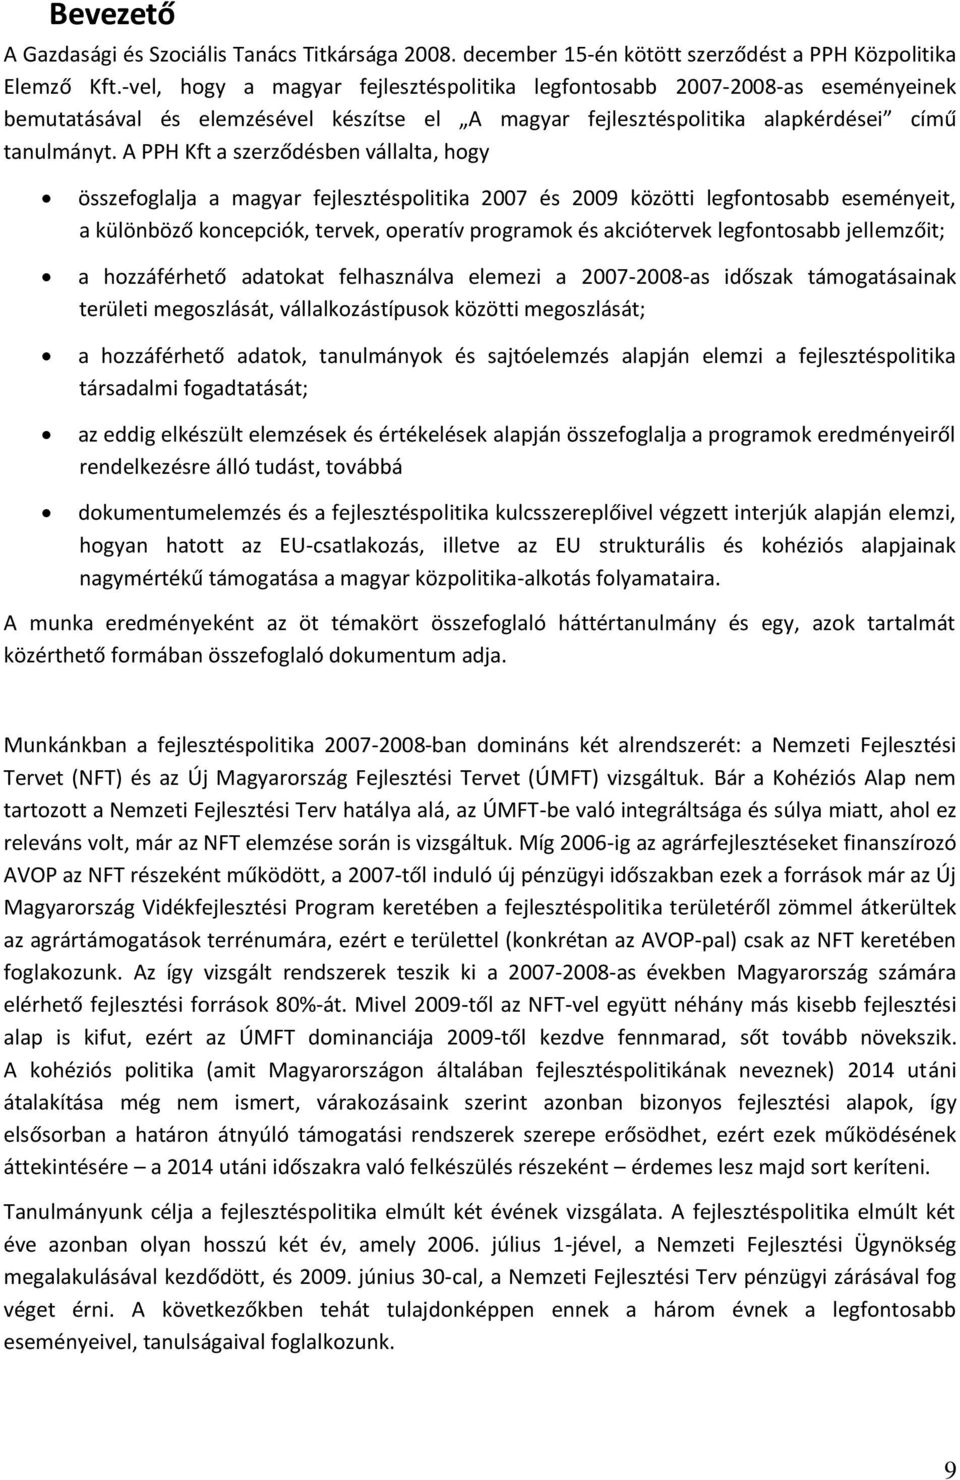 A PPH Kft a szerződésben vállalta, hogy összefoglalja a magyar fejlesztéspolitika 2007 és 2009 közötti legfontosabb eseményeit, a különböző koncepciók, tervek, operatív programok és akciótervek